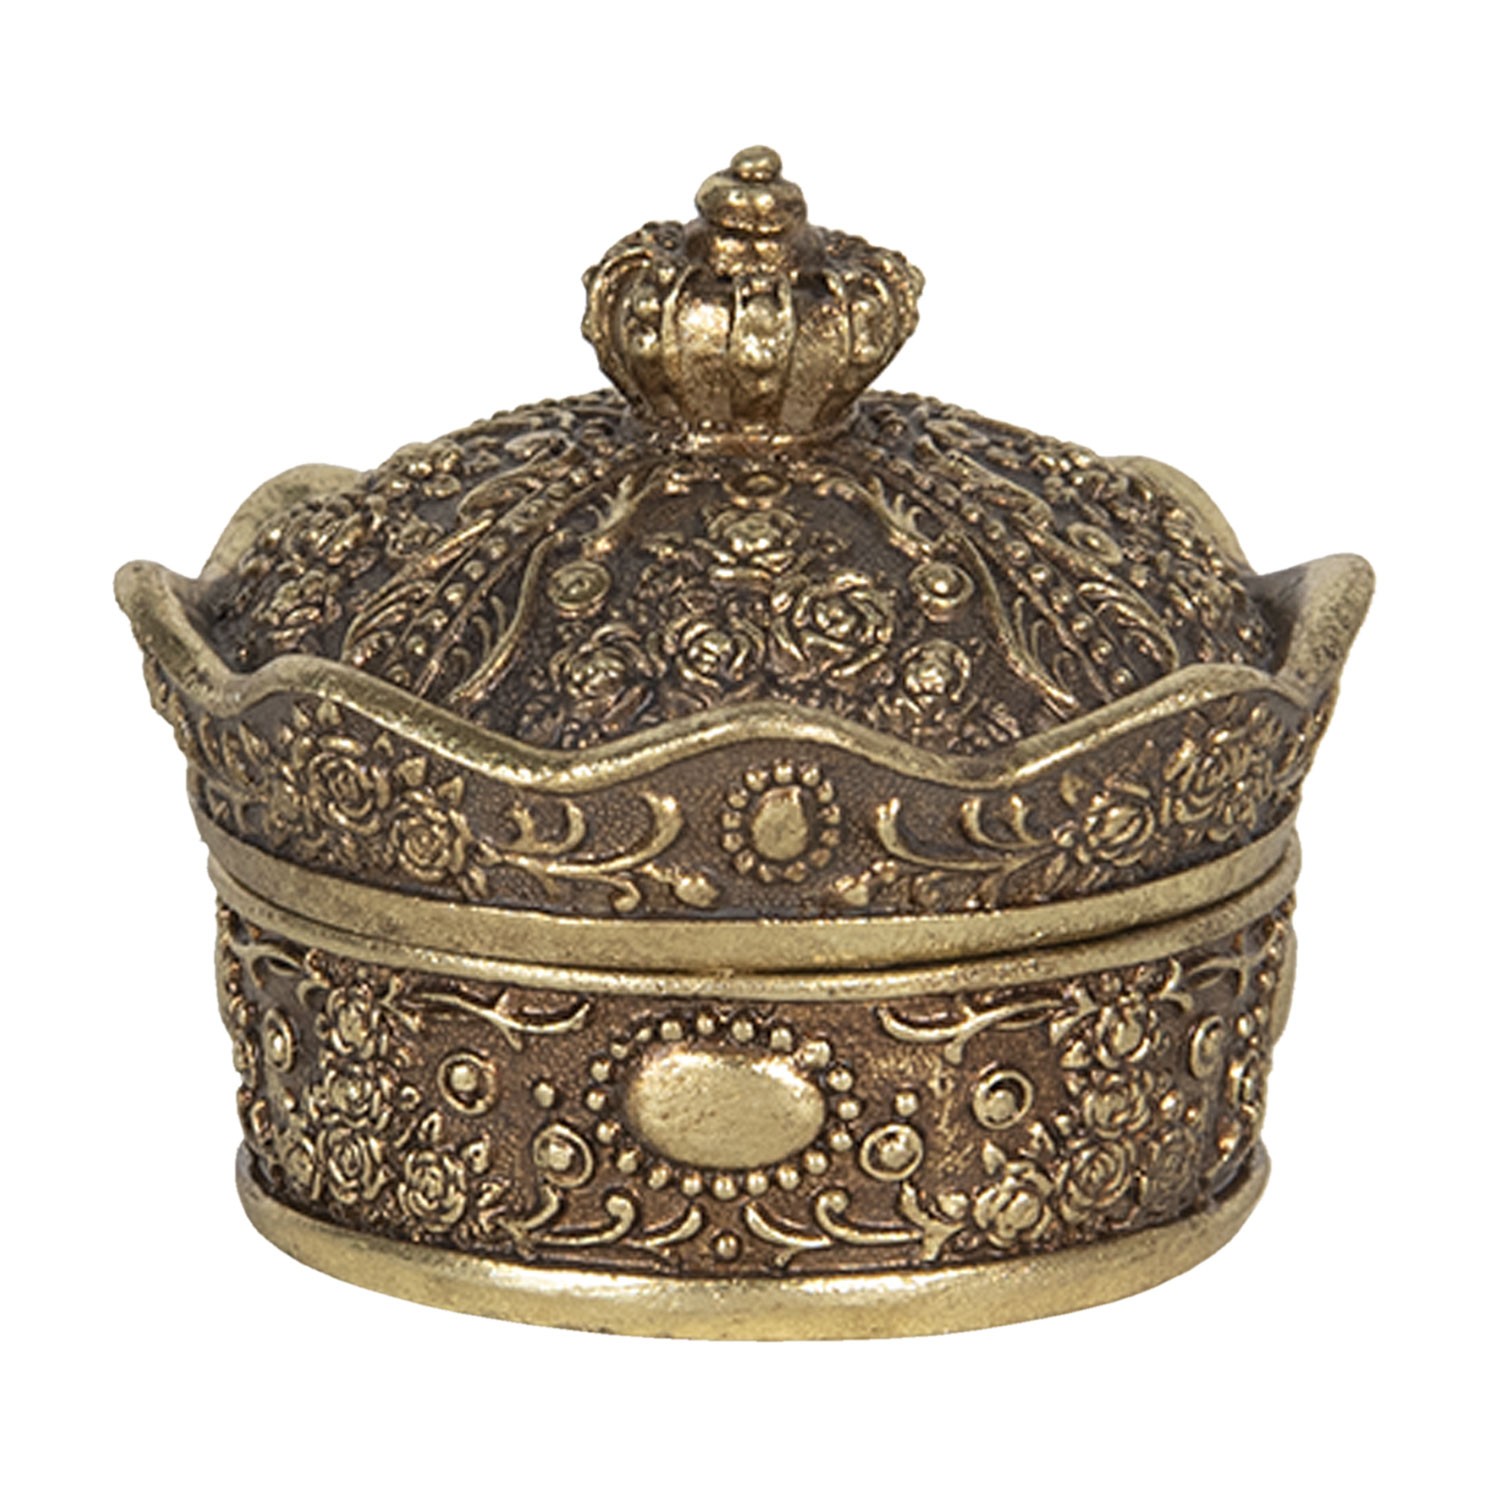 Šperkovnice ve tvaru zlaté koruny - 9*9*7 cm Clayre & Eef